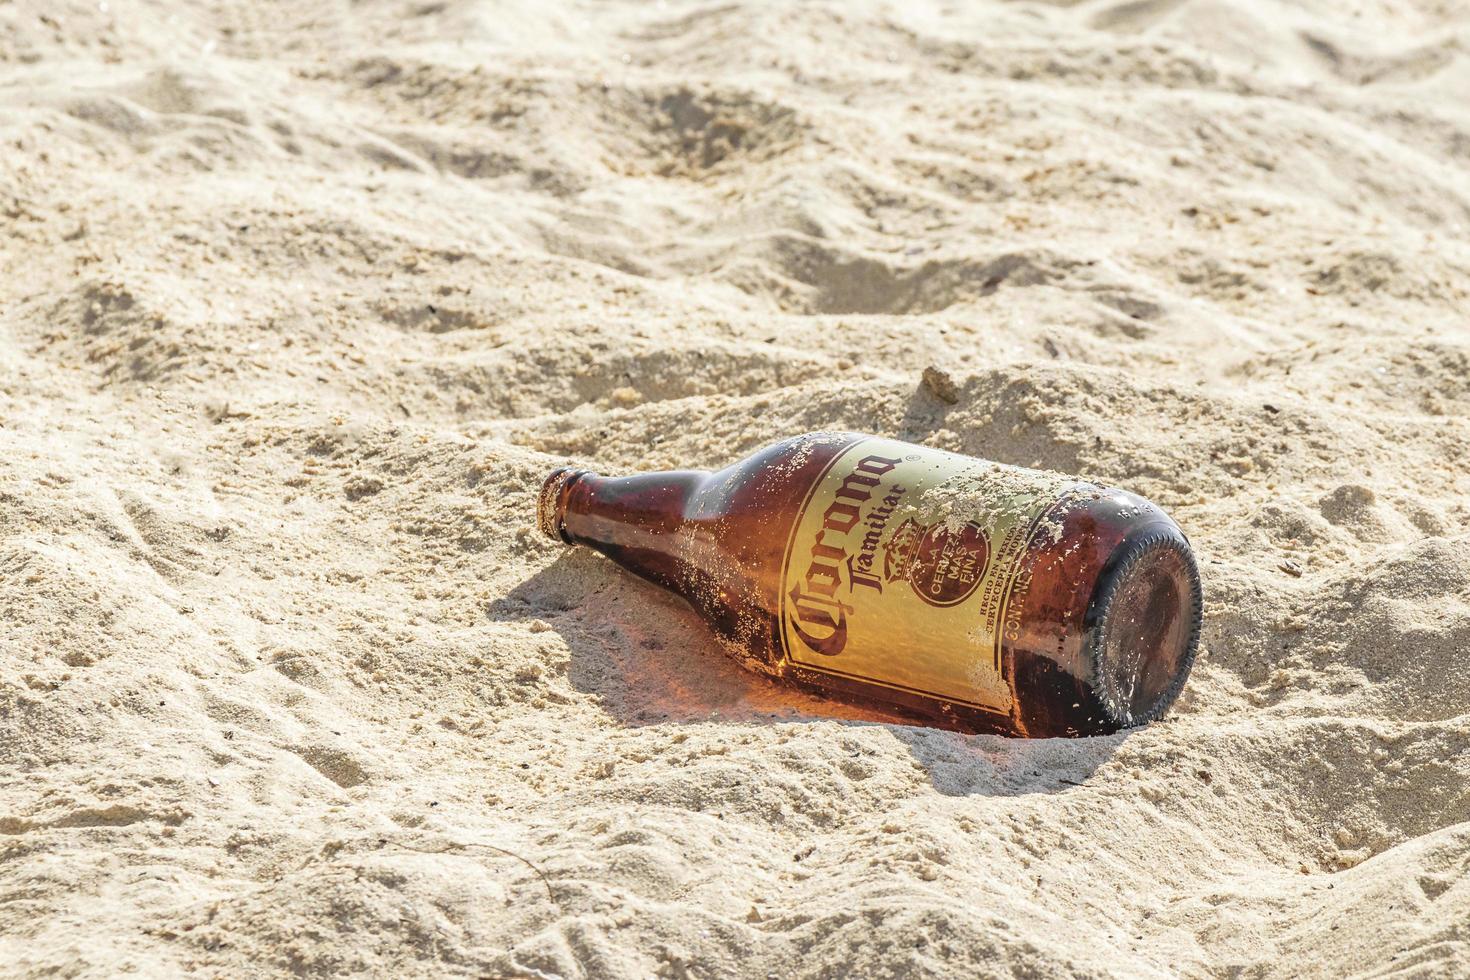 playa del carmen messico 05. agosto 2021 corona bottiglie di birra immondizia inquinamento spiaggia playa del carmen messico. foto